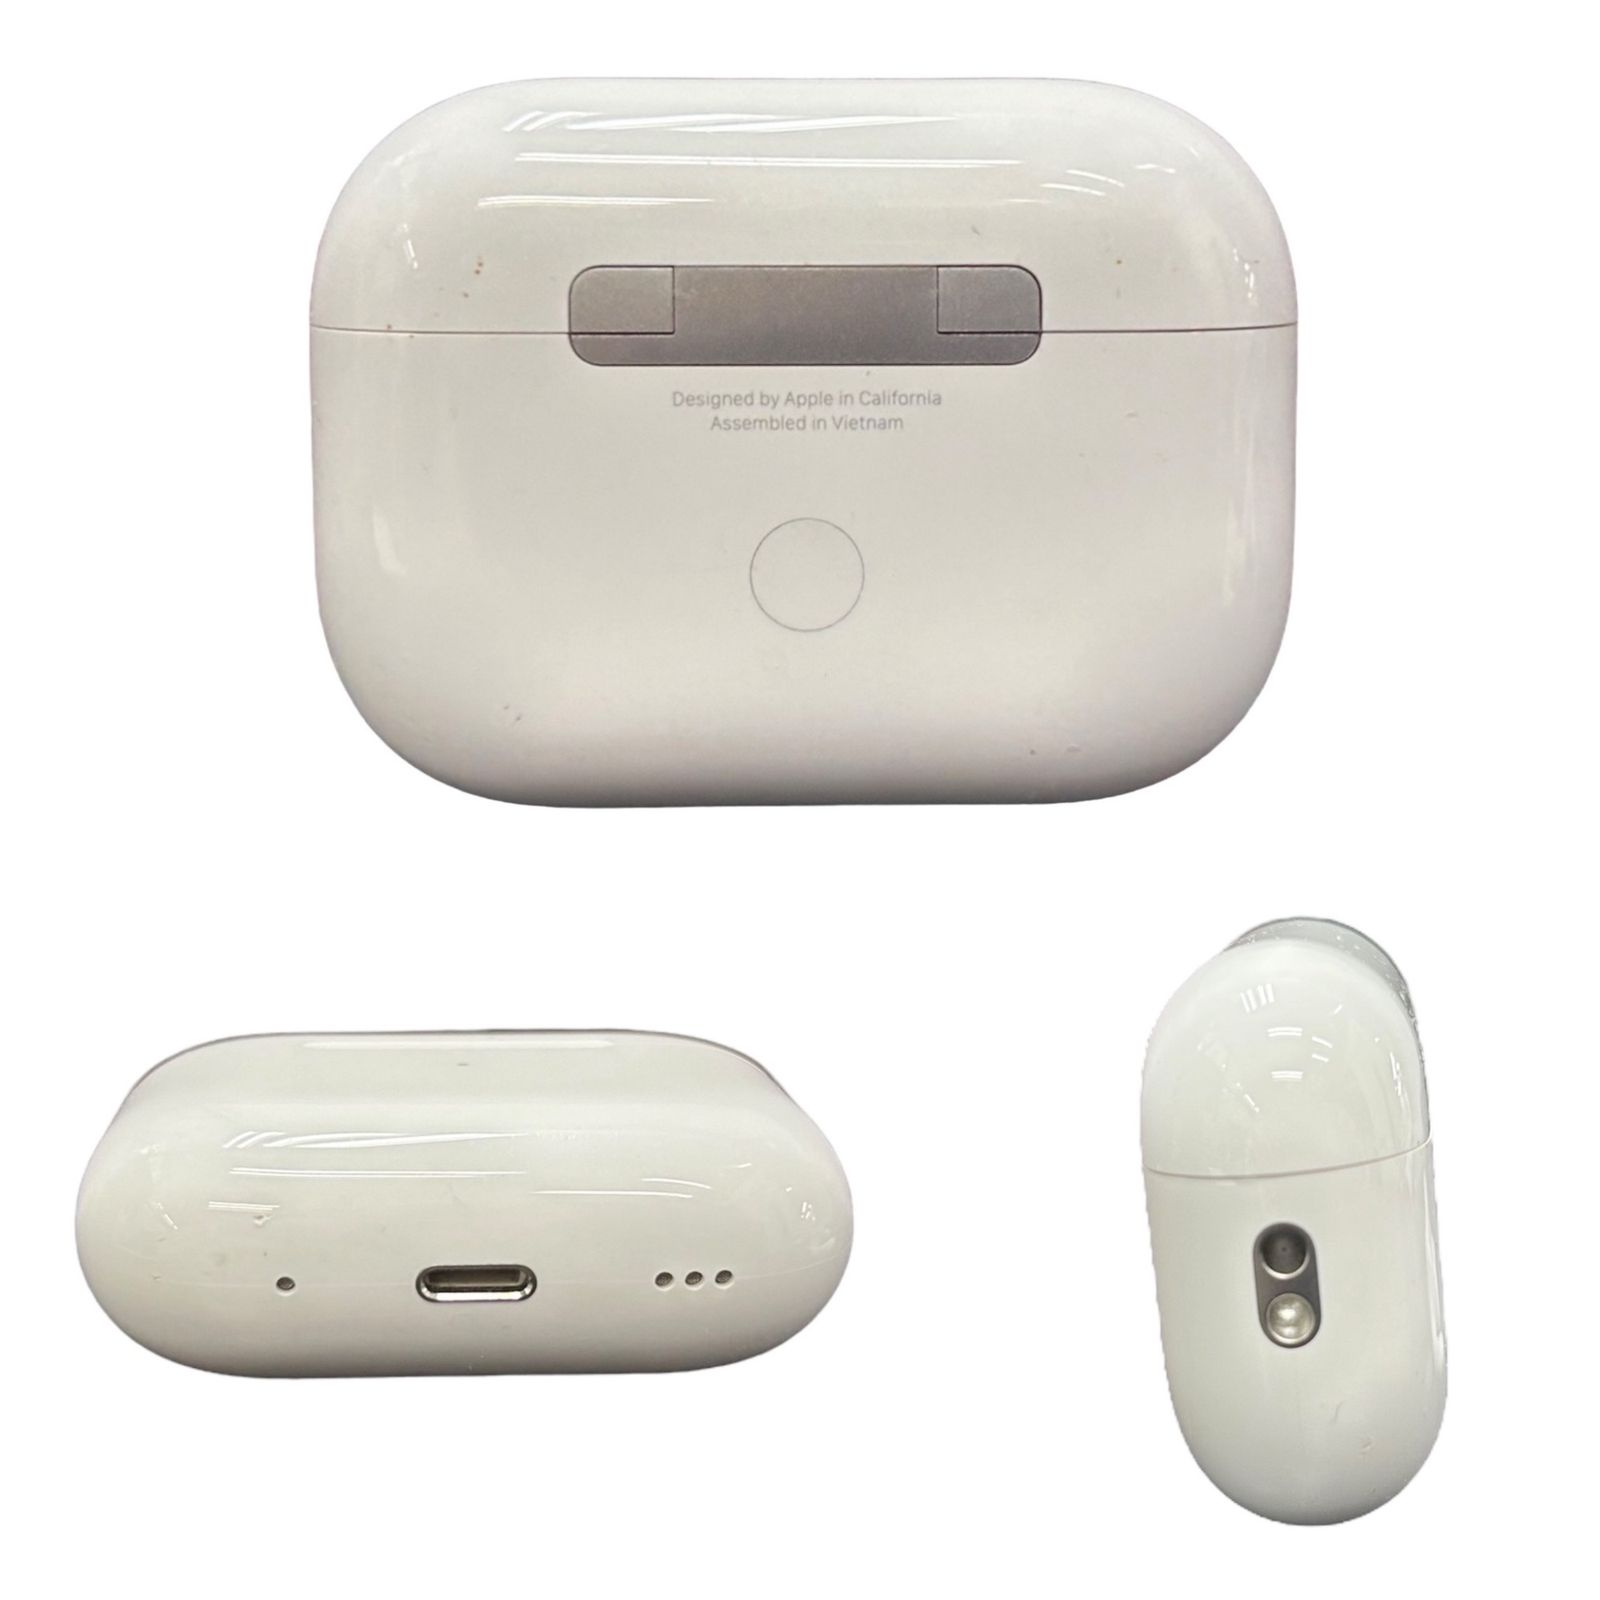 Apple (アップル) airpods pro エアポッズ プロ 第2世代 Bluetooth 